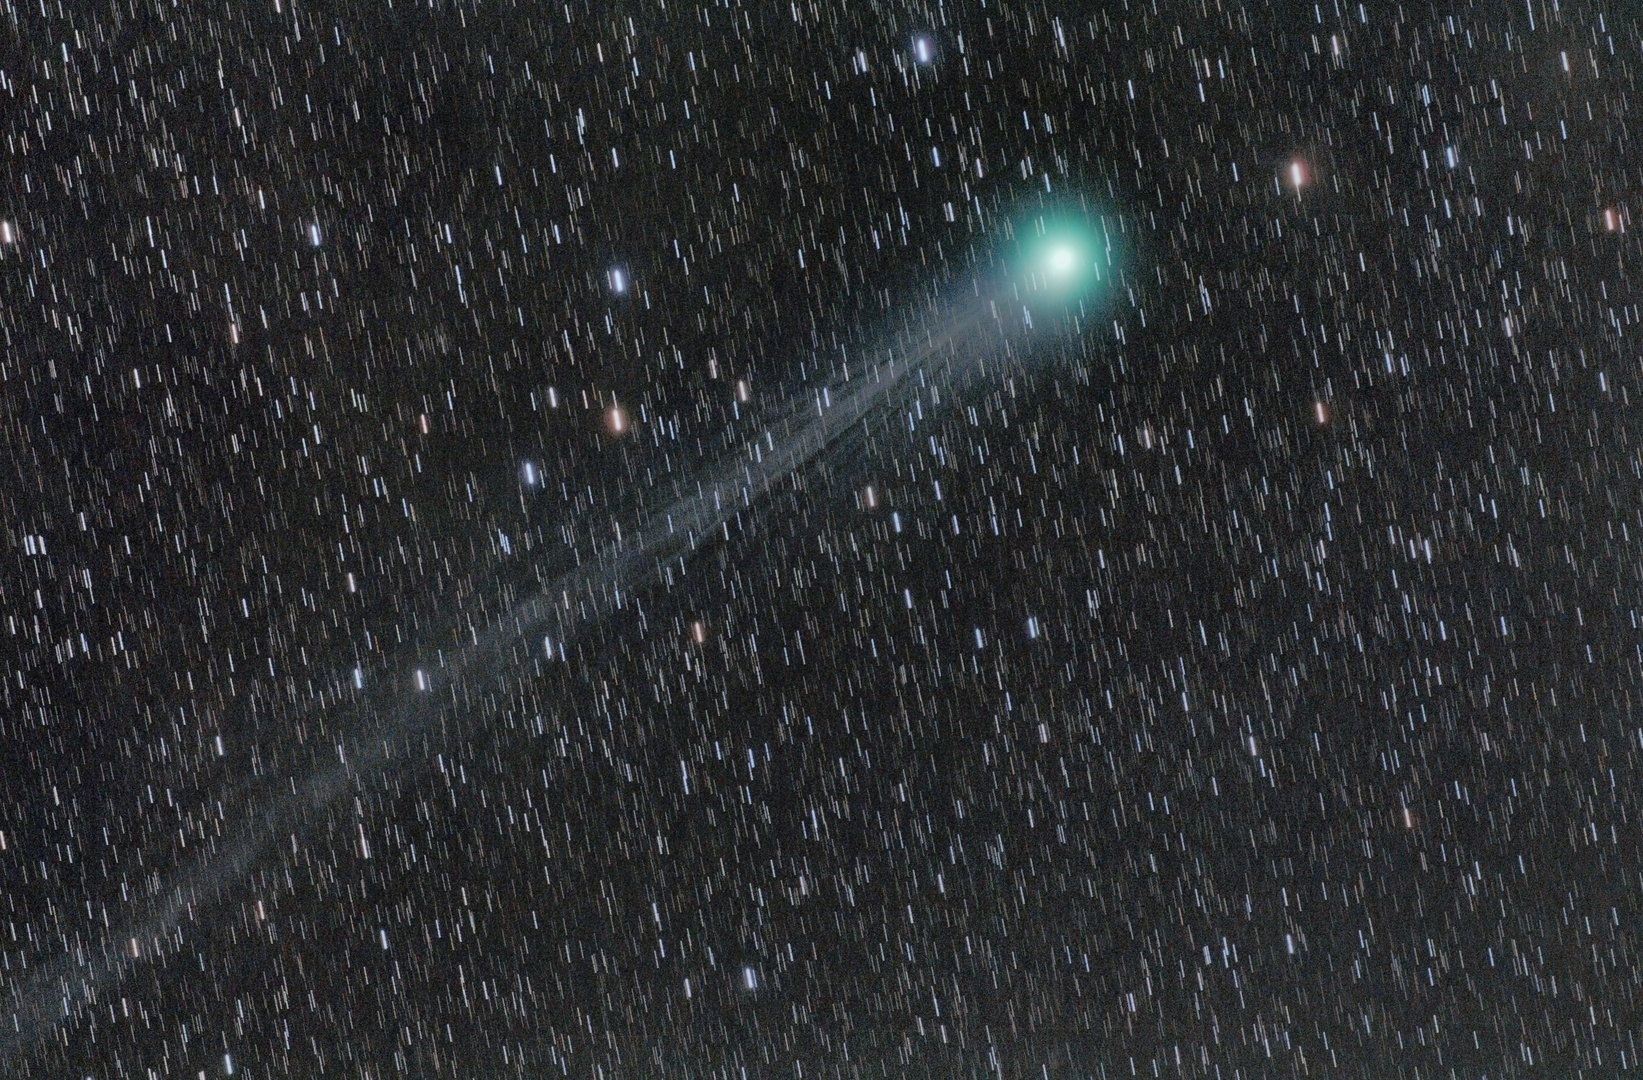 Komet Lovejoy vom 17.01.2015